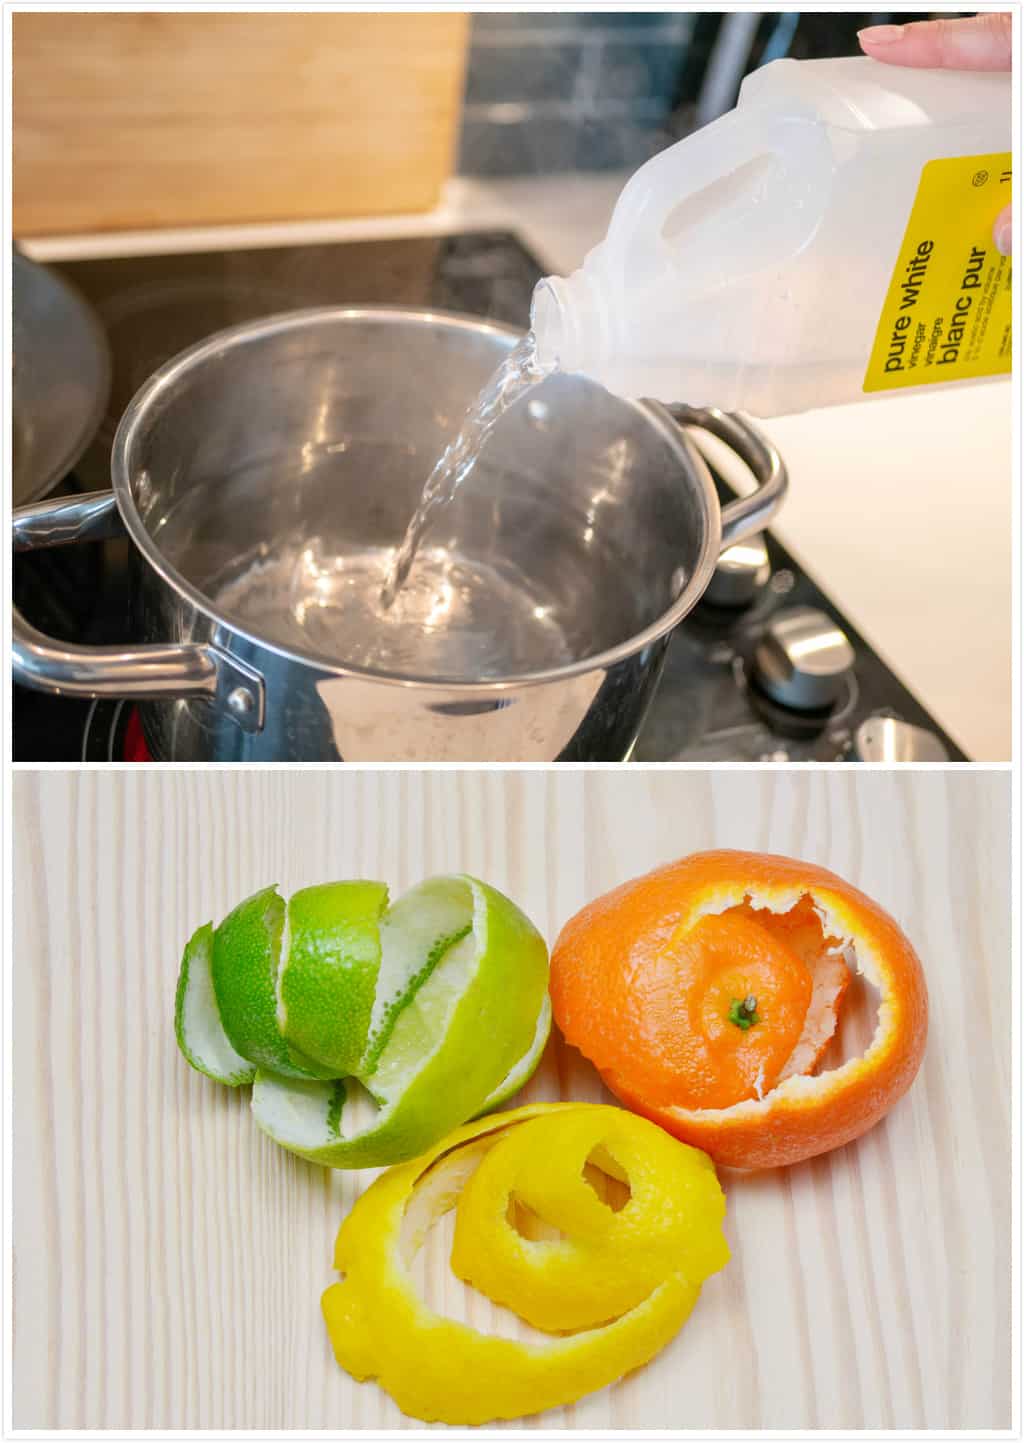 Quick vinegar and citrus cleaner